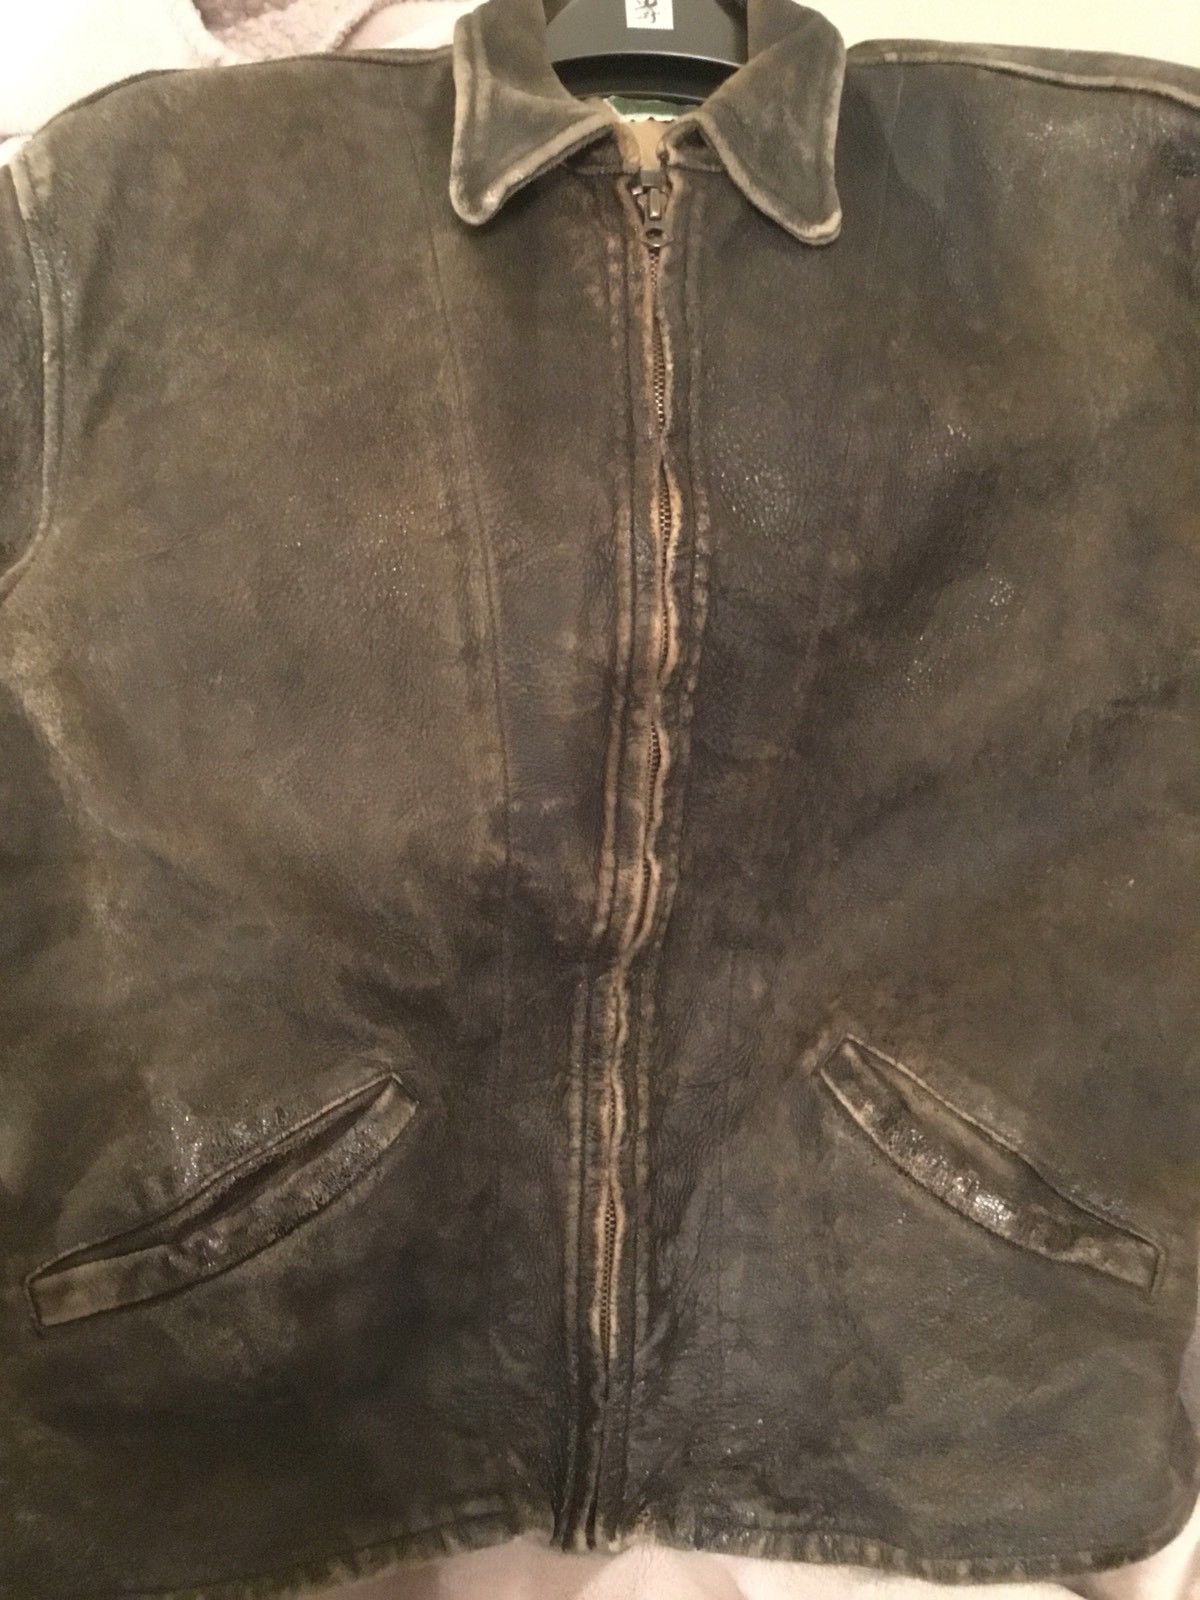 Levis LVC 1930s Menlo leather jacket